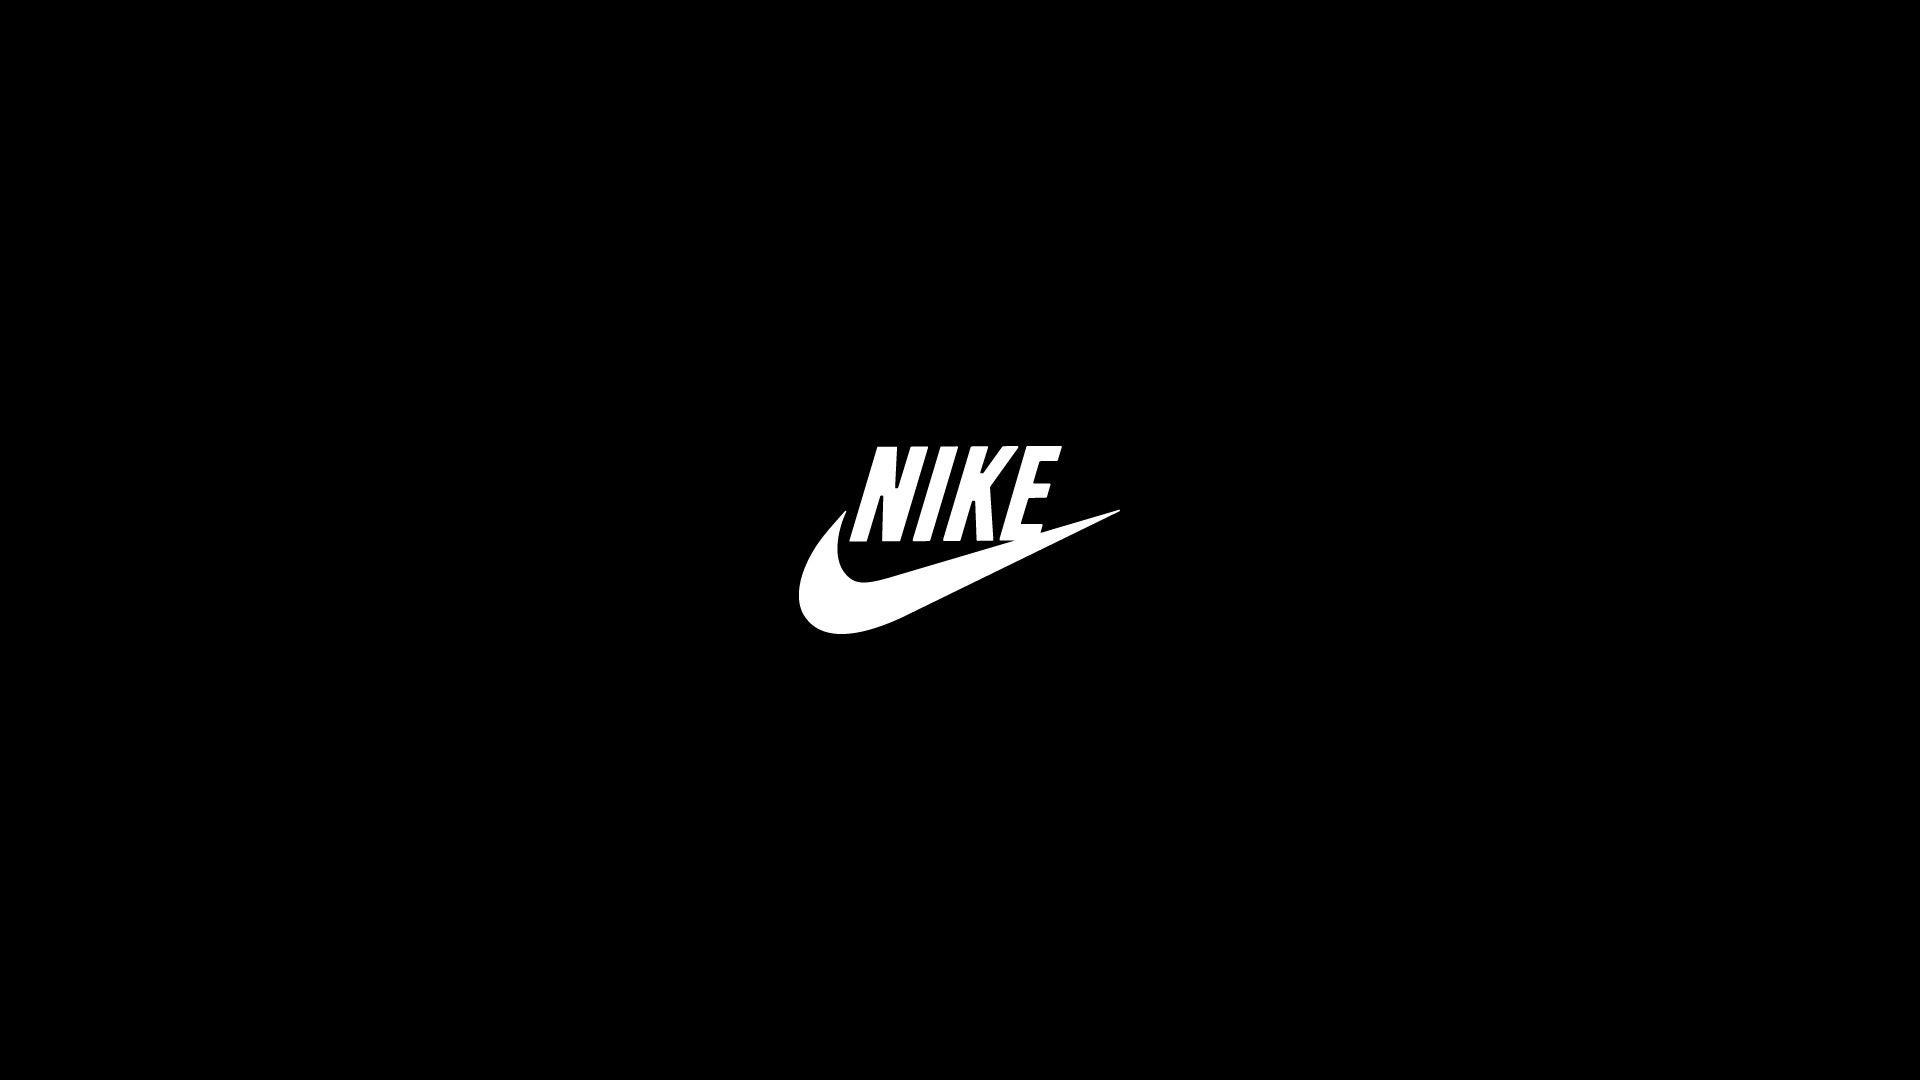 Nike Air Logo Wallpapers - Wallpaper Cave